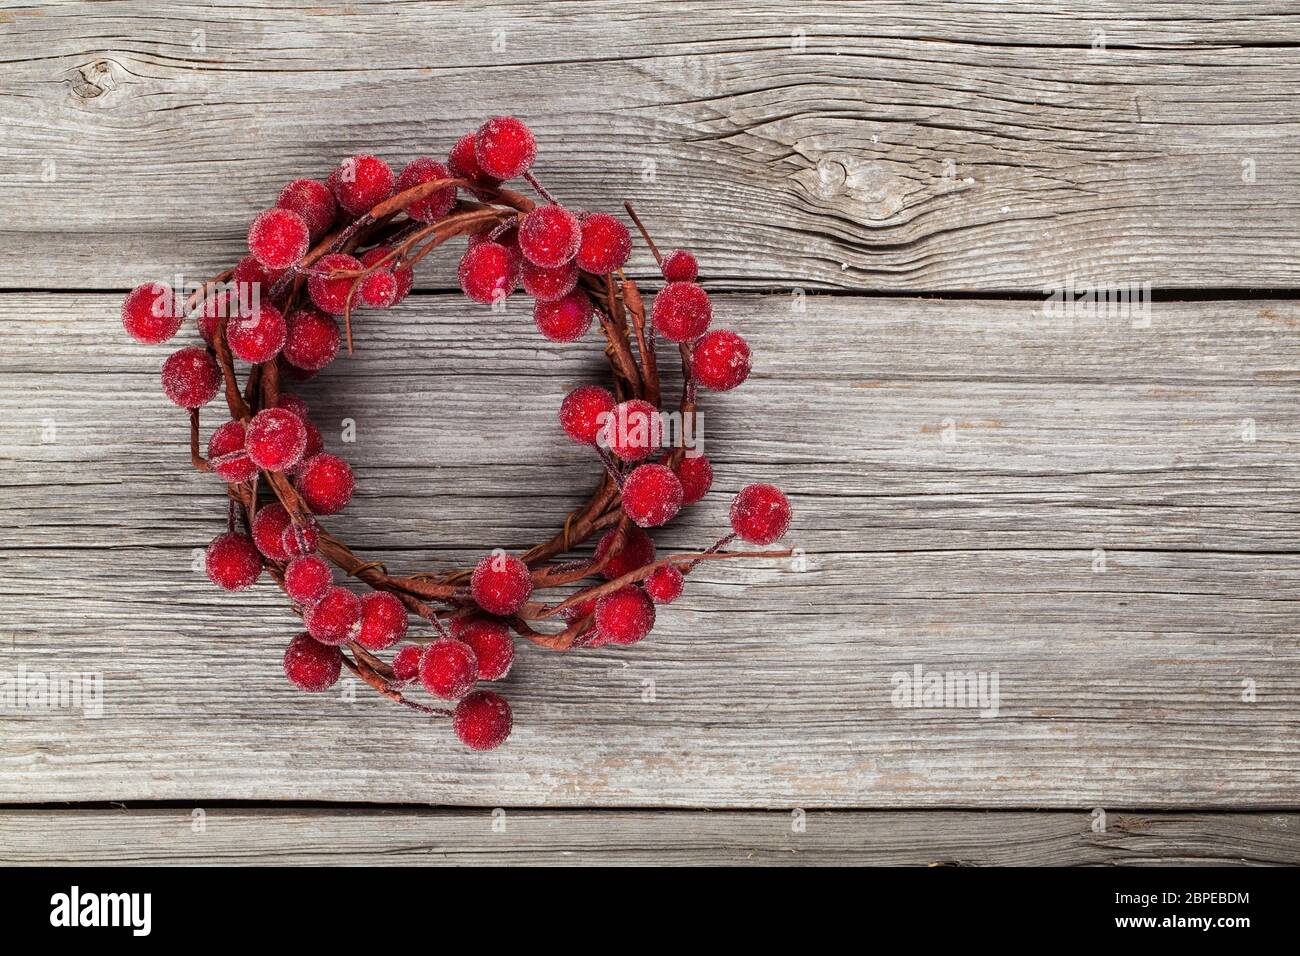 Adventskranz aus roten Beeren auf Holzuntergrund Stock Photo